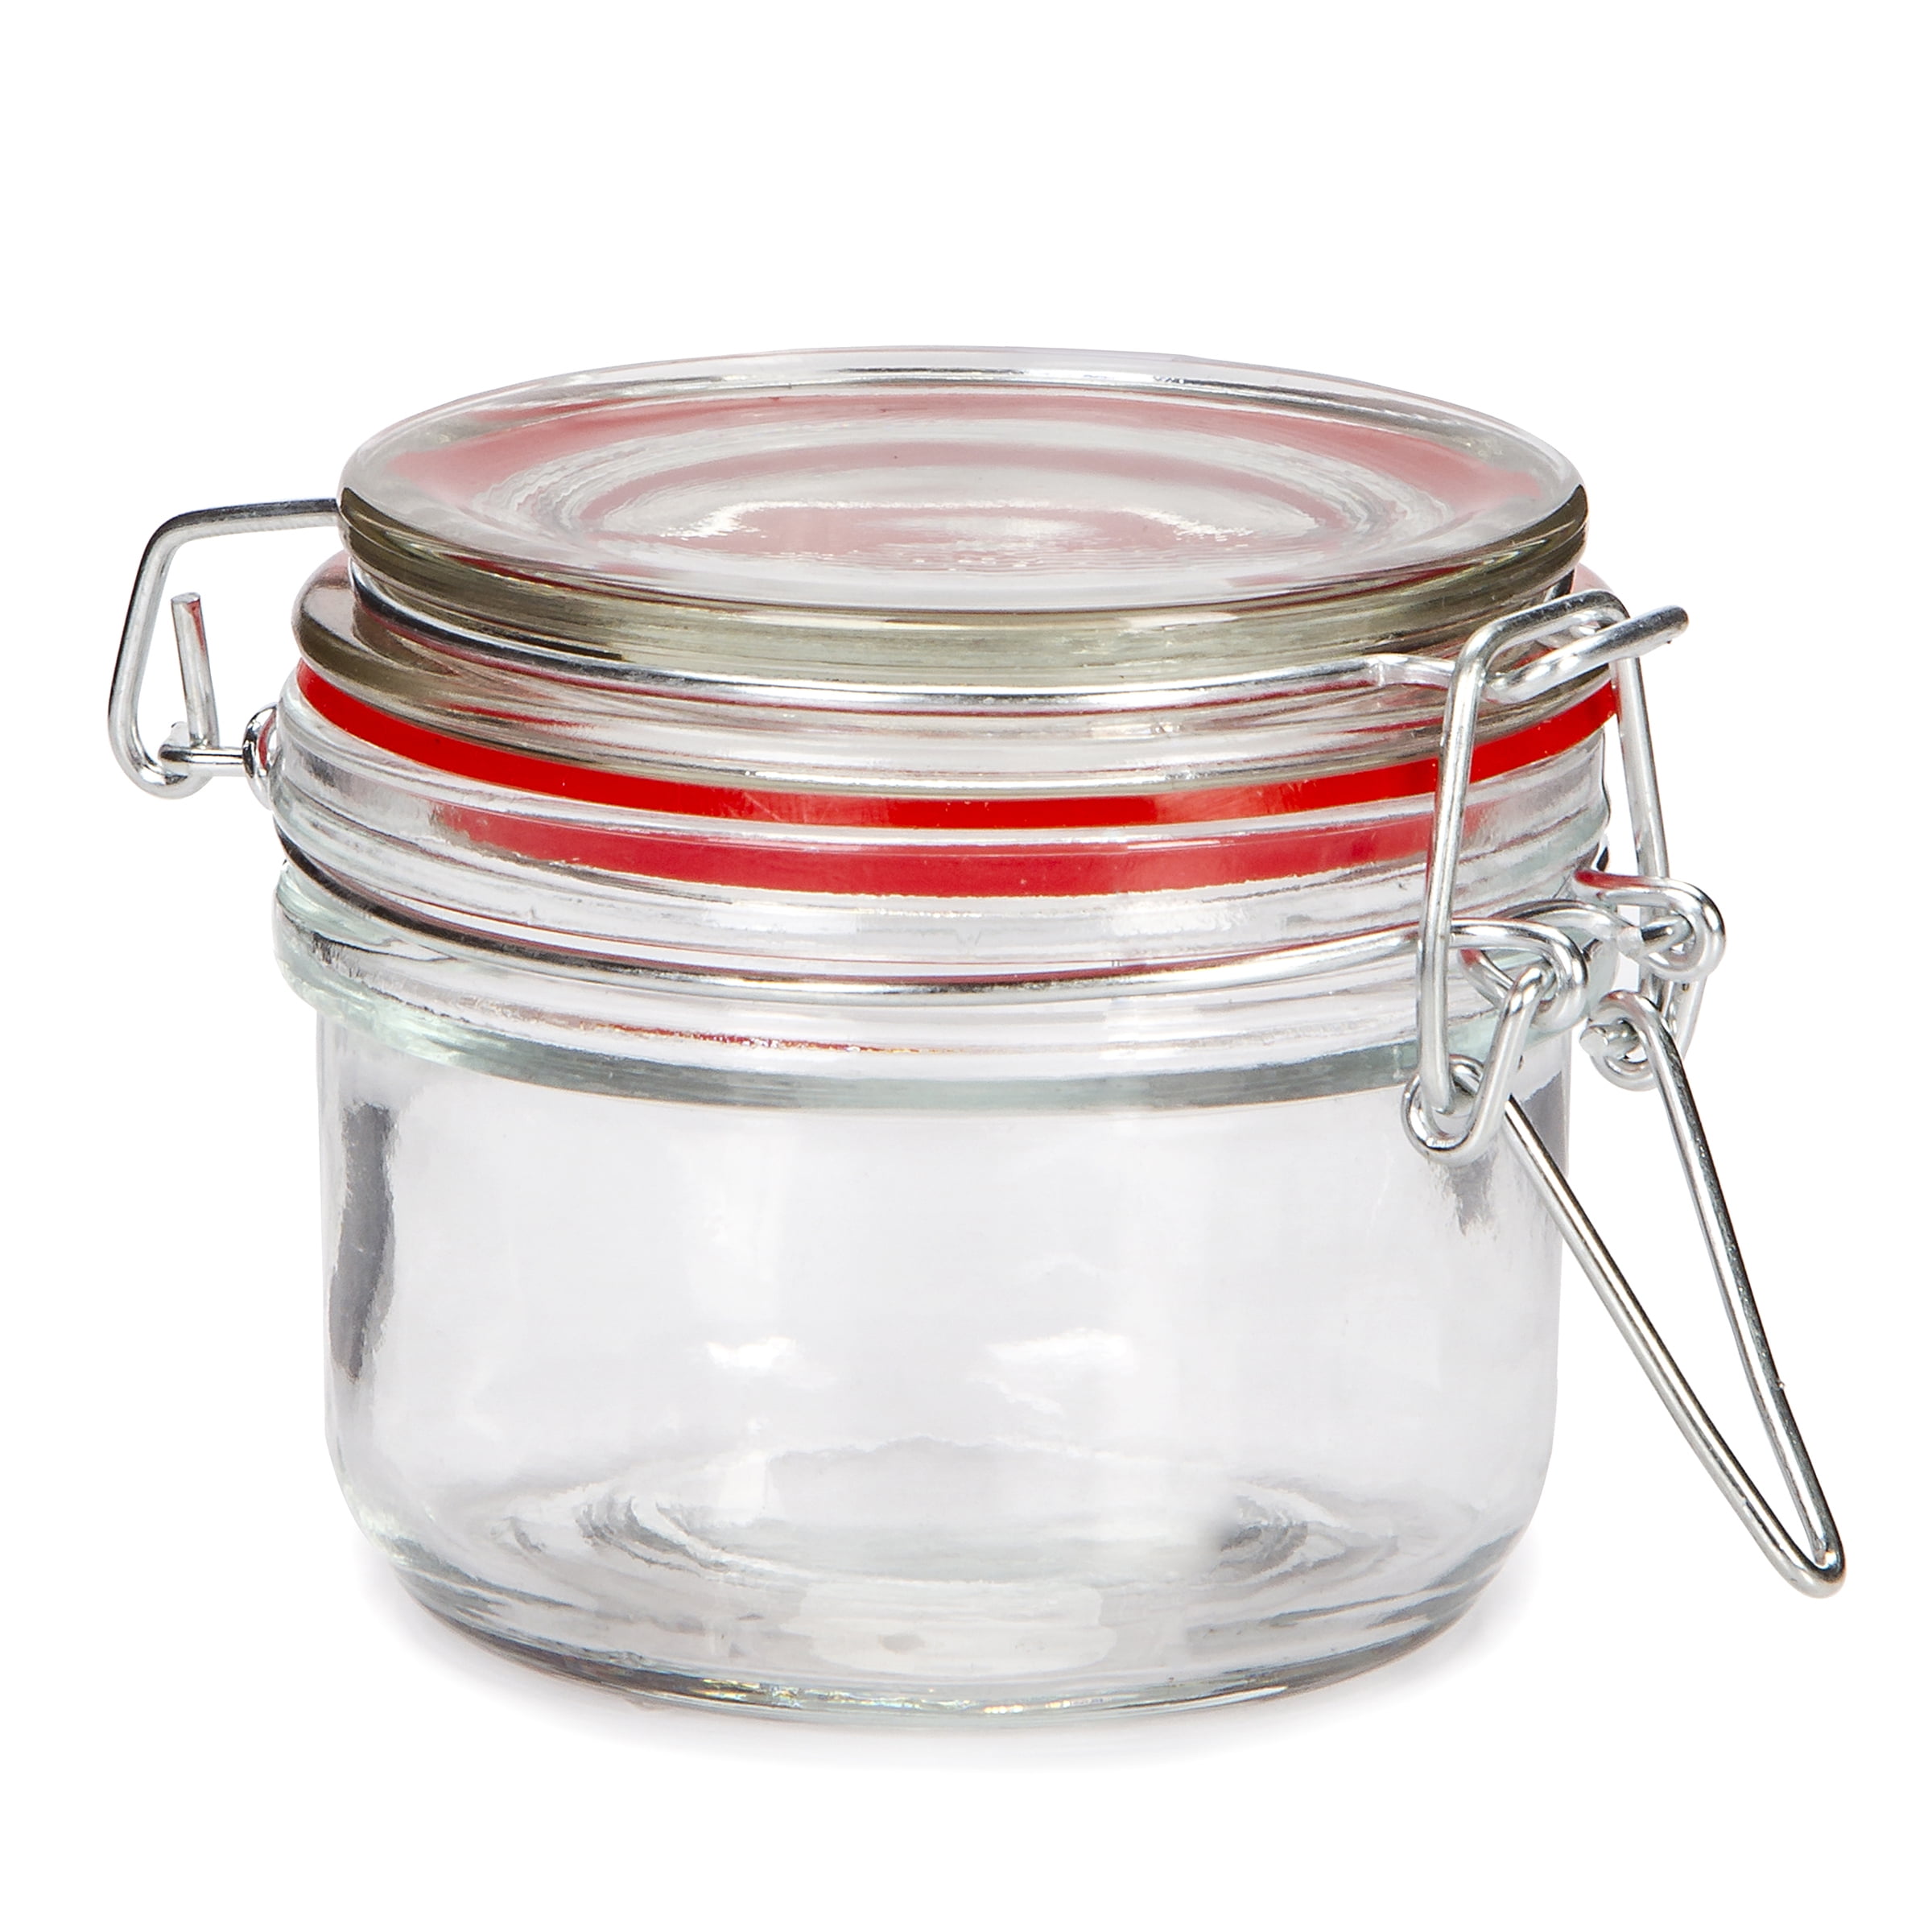 Darice Small Glass Jar w/Locking Lid 3 x 2.7 inches - Walmart.com